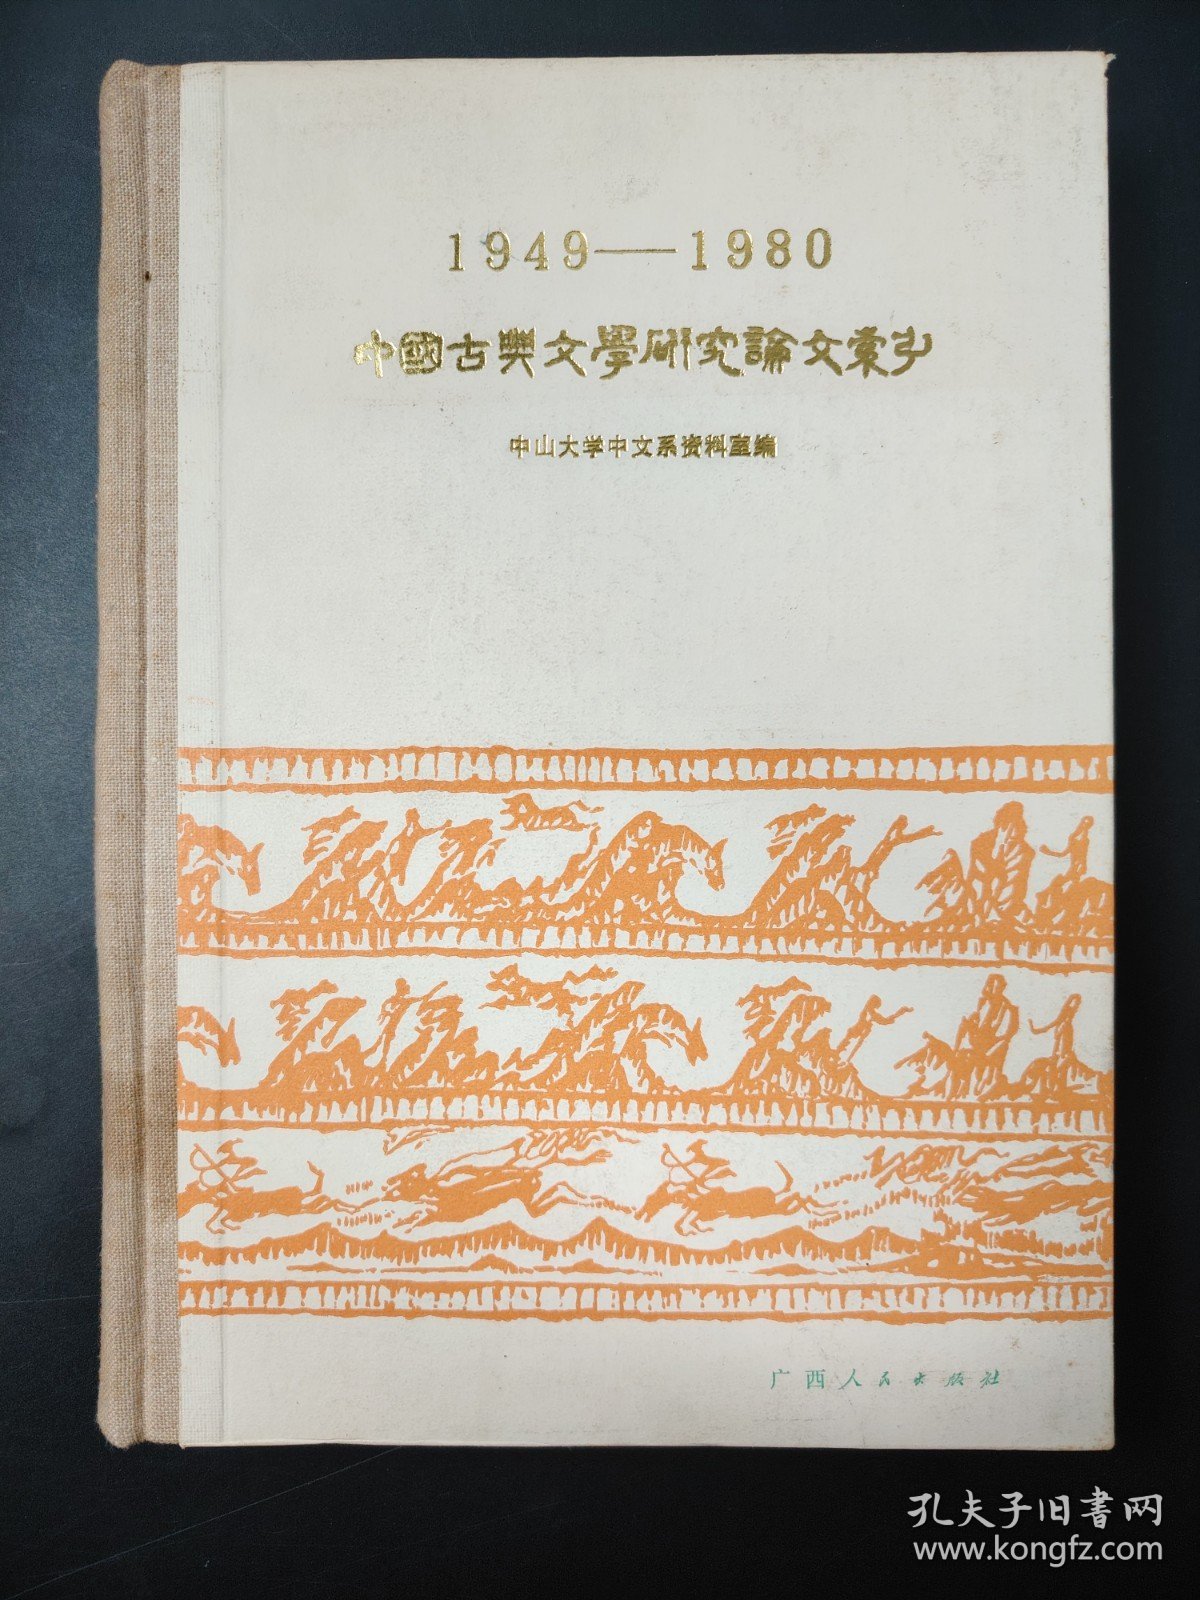 1949-1980 中国古典文学研究论文索引